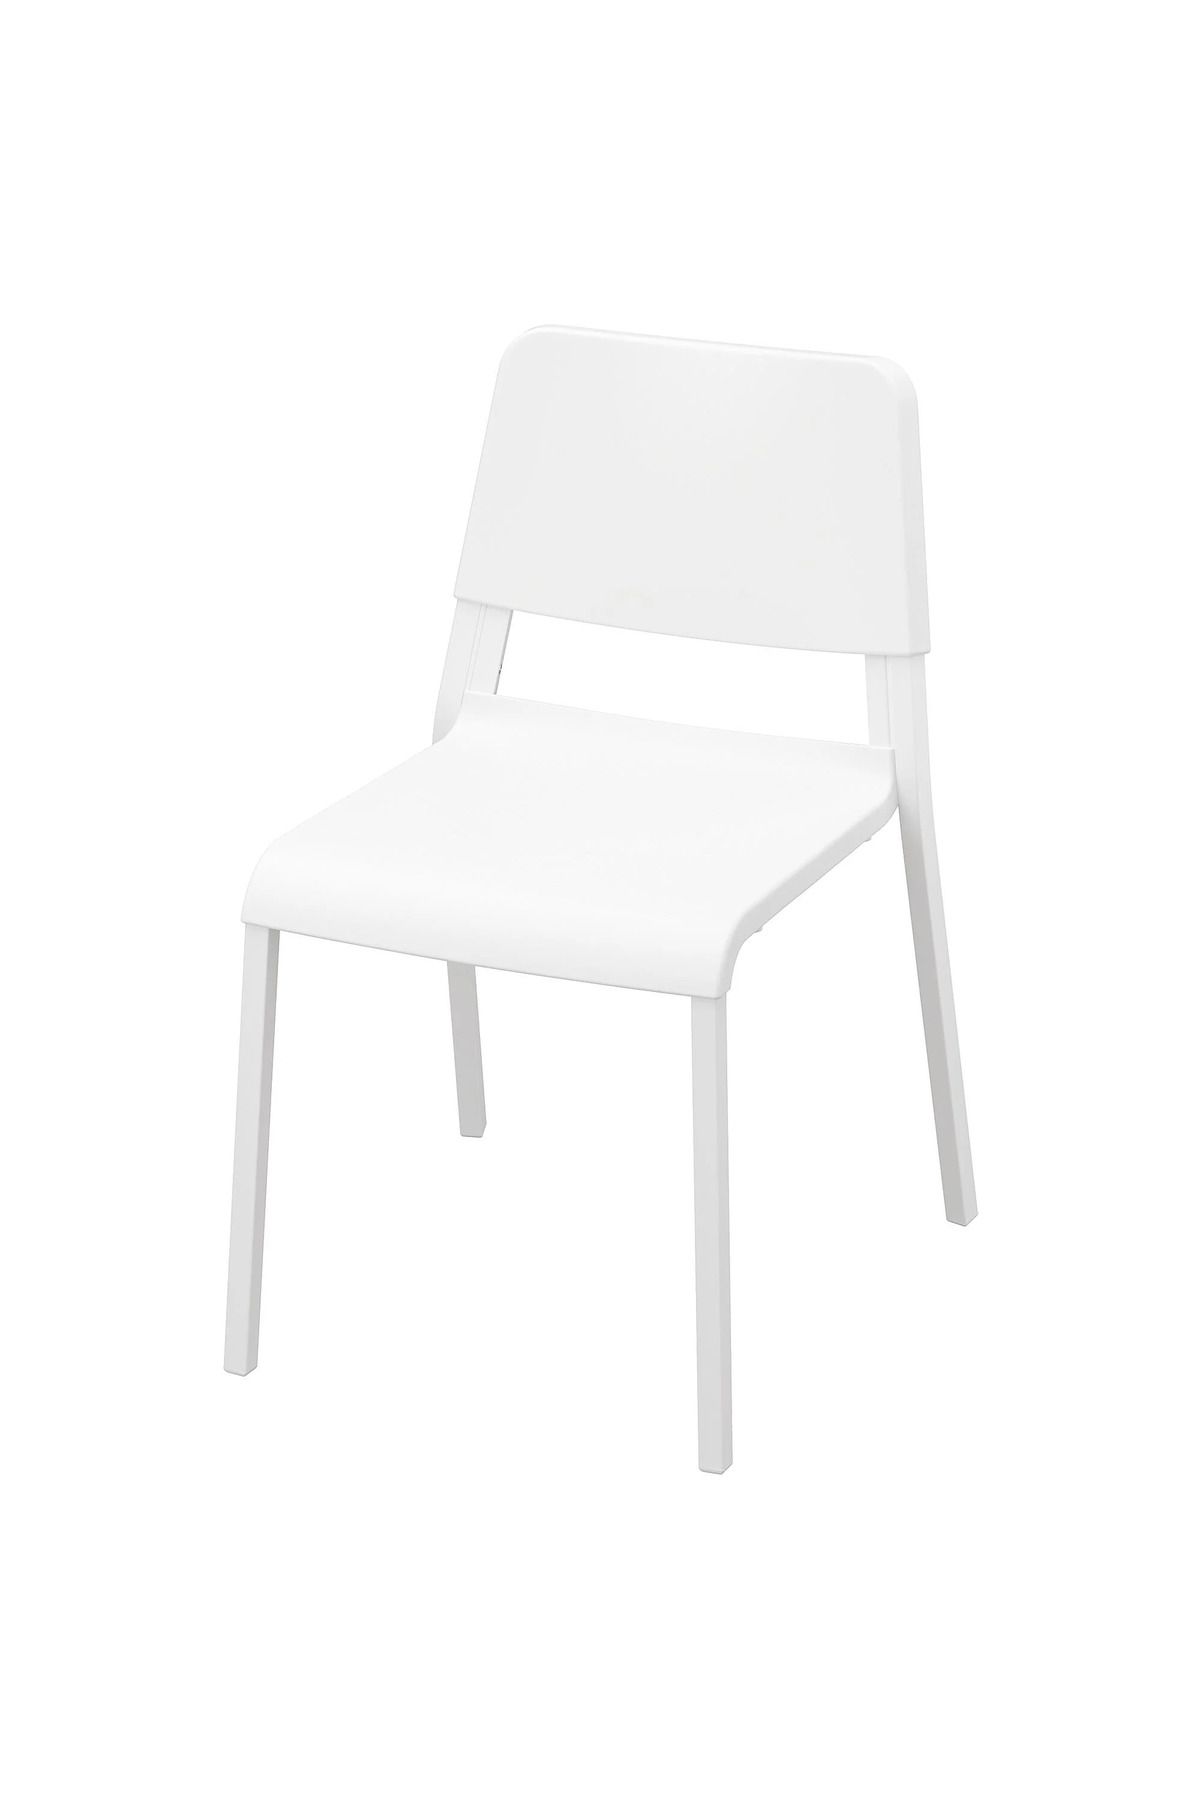 IKEA Kumaş yok beyaz plastik sandalye akdenizshop 47 x 78 x 41 1 Yıl Beyaz Sandalye Modern Plastik 1